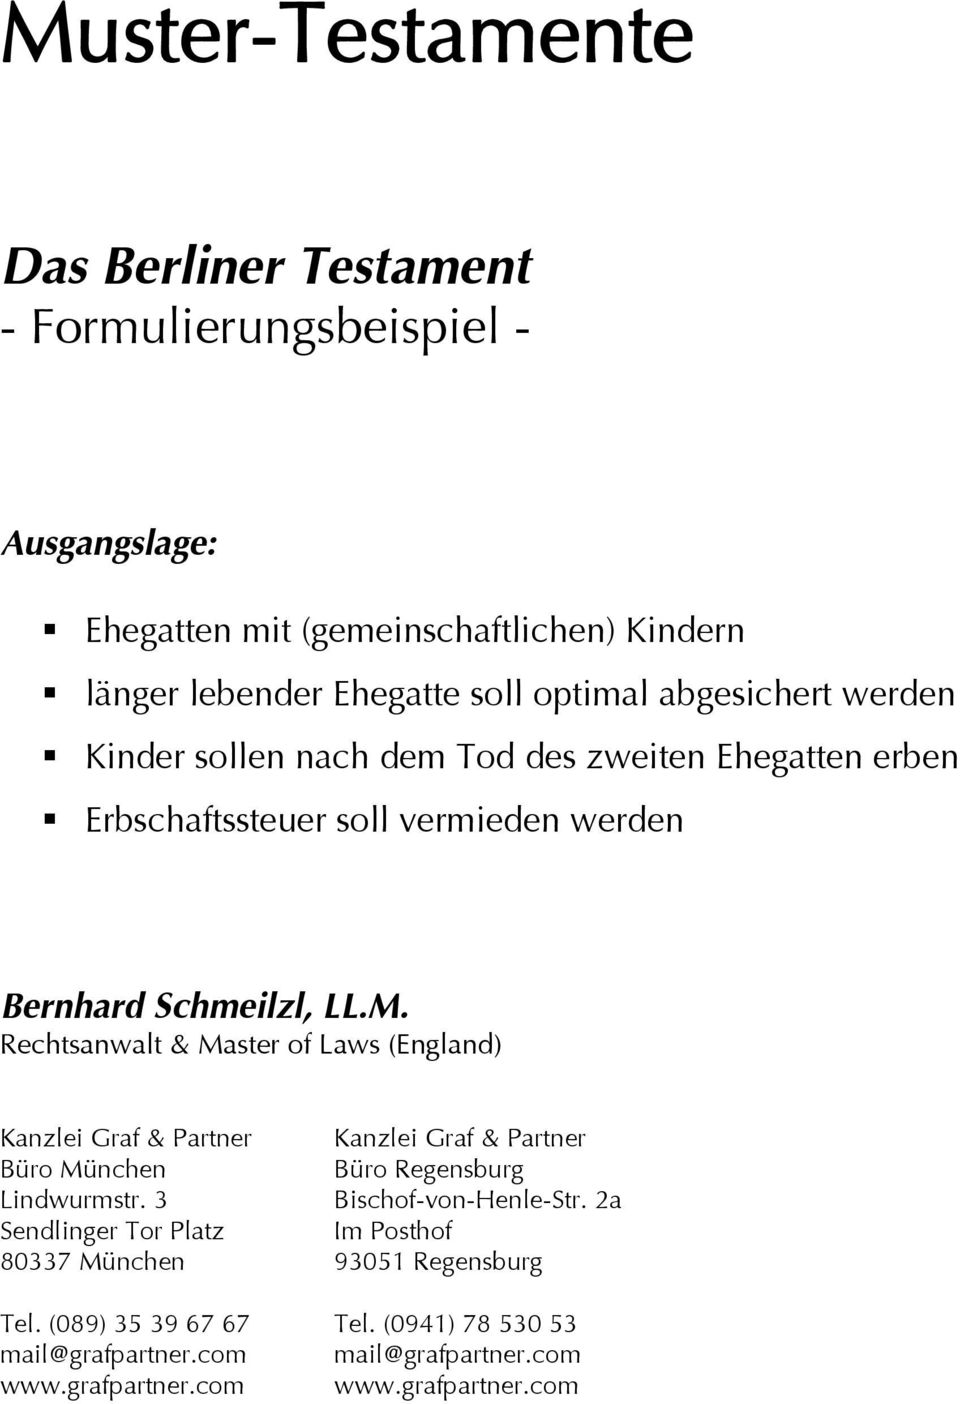 Muster Testamente Das Berliner Testament Formulierungsbeispiel Ausgangslage Pdf Kostenfreier Download